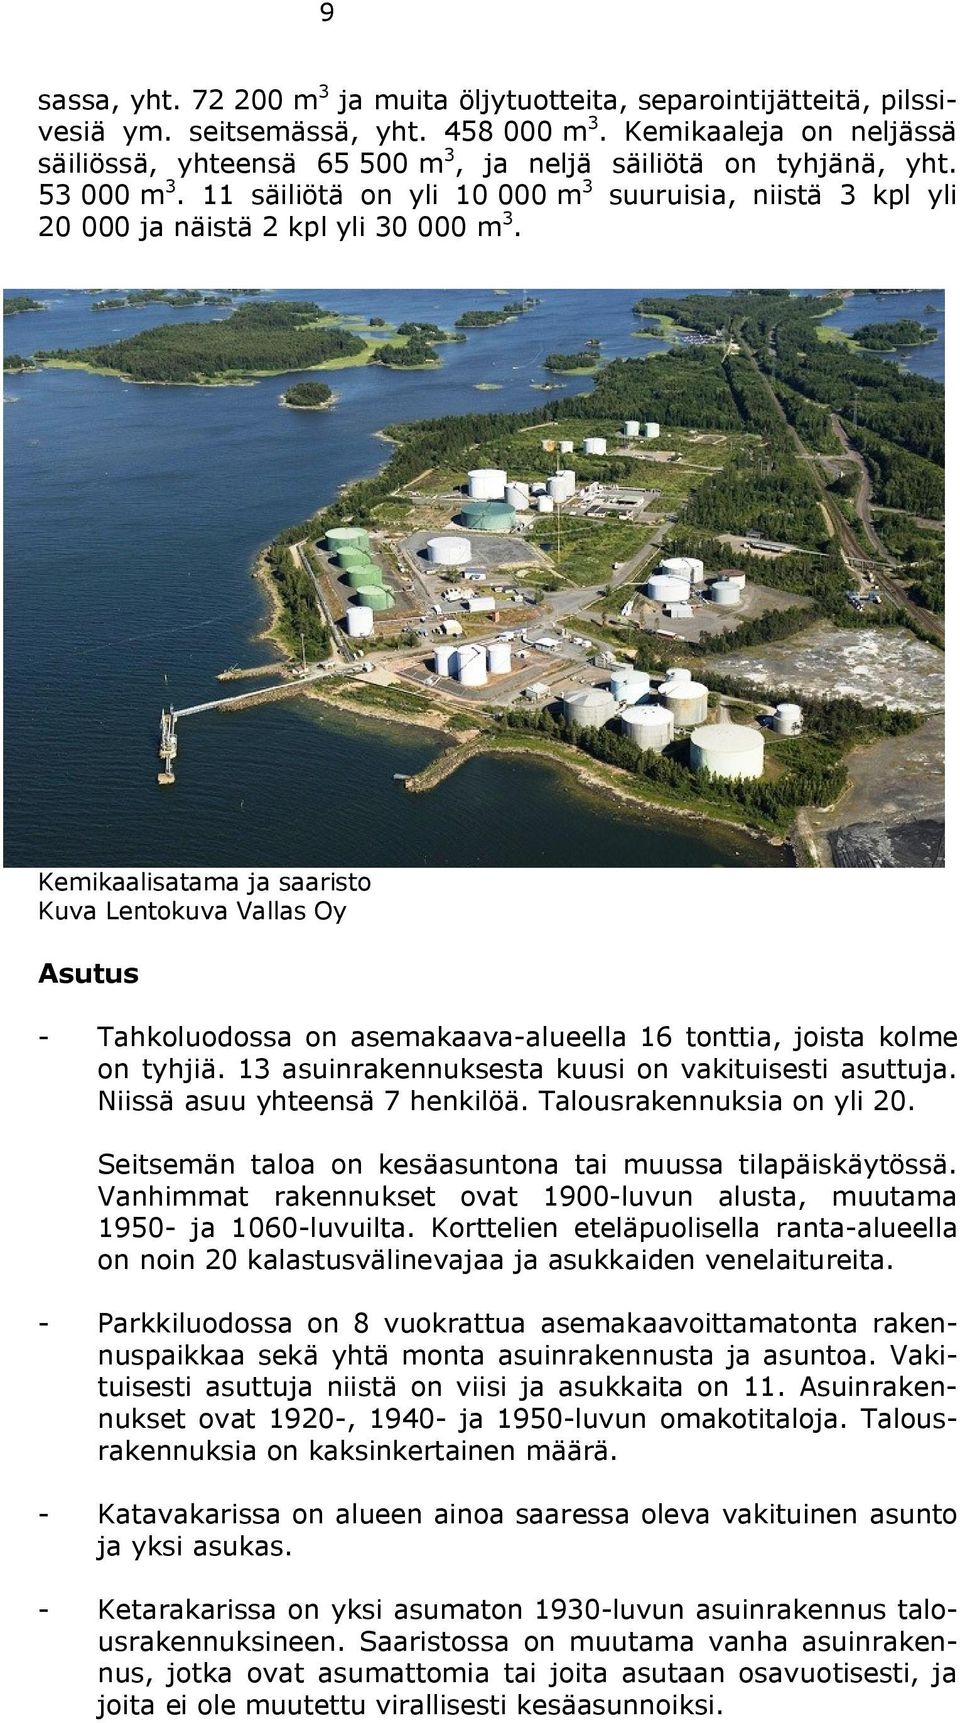 Kemikaalisatama ja saaristo Kuva Lentokuva Vallas Oy Asutus - Tahkoluodossa on asemakaava-alueella 16 tonttia, joista kolme on tyhjiä. 13 asuinrakennuksesta kuusi on vakituisesti asuttuja.